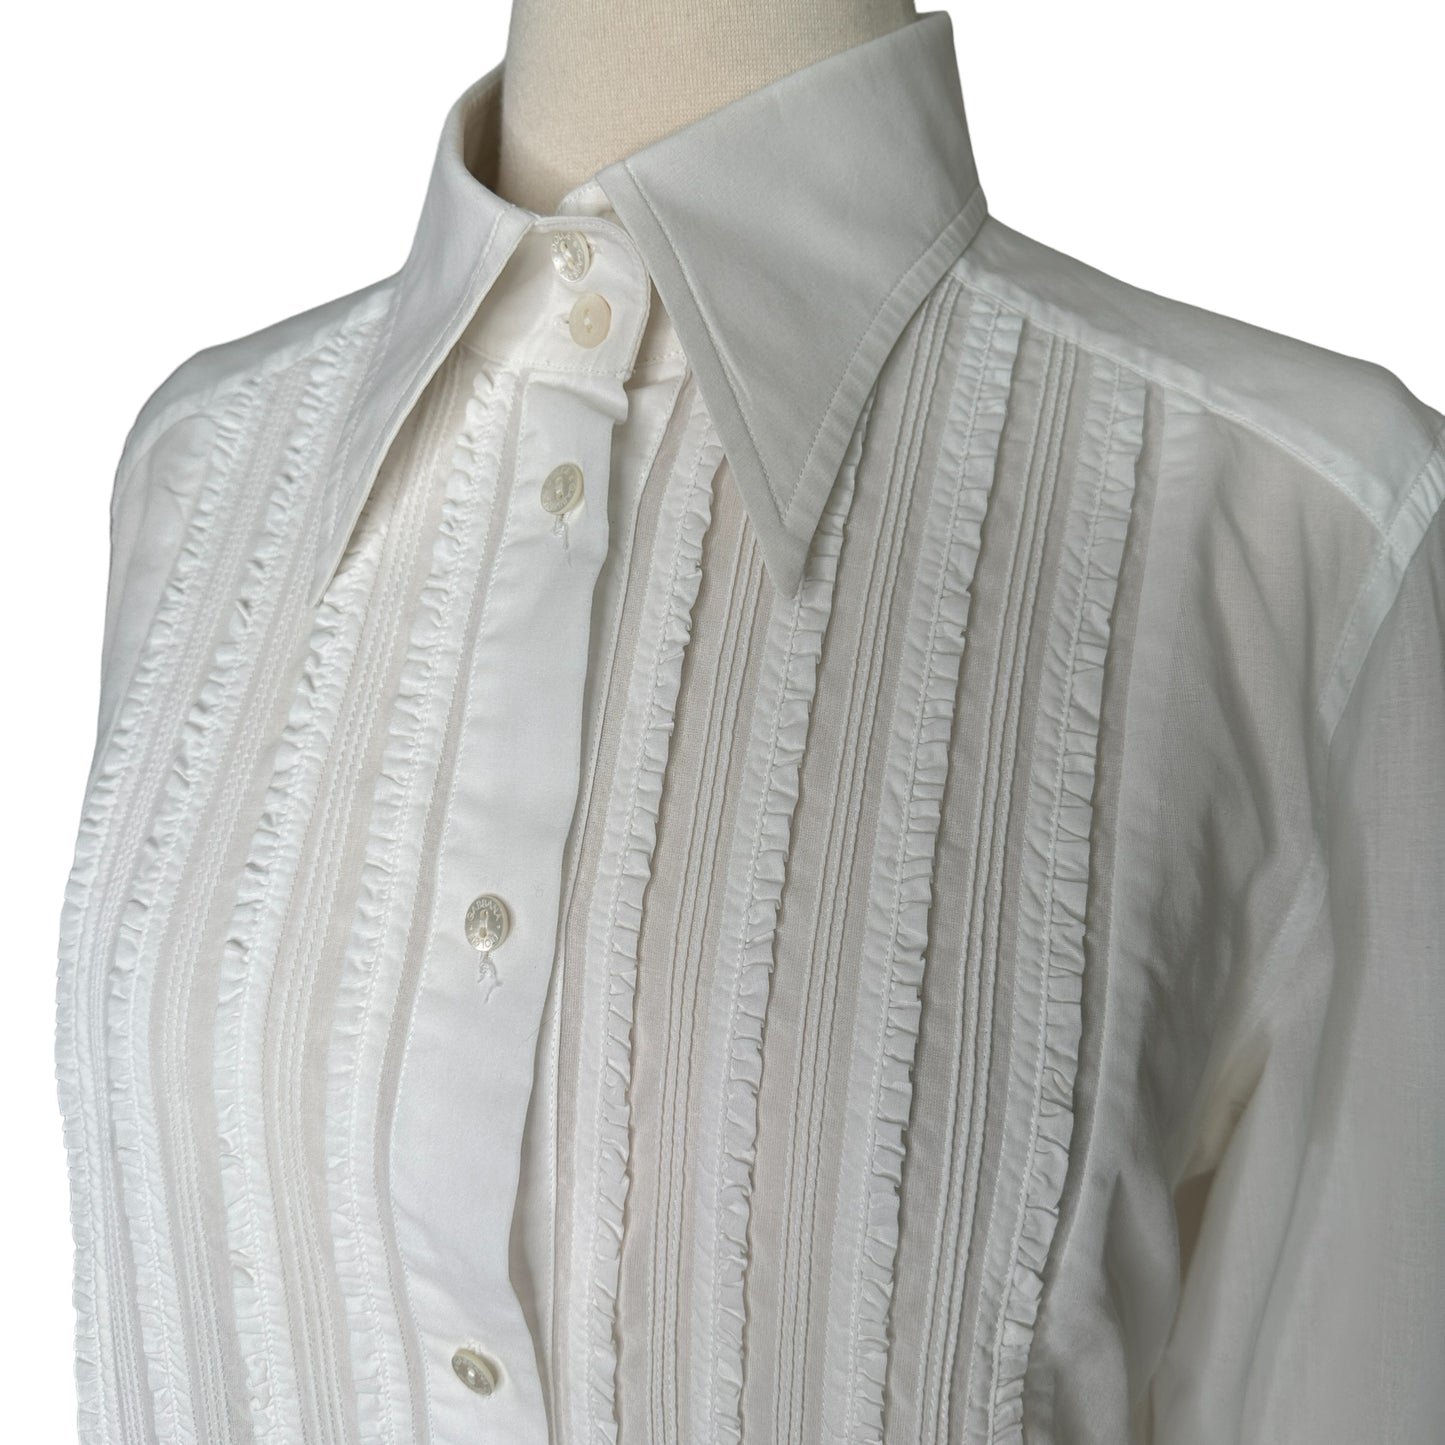 White Button Down Shirt - L